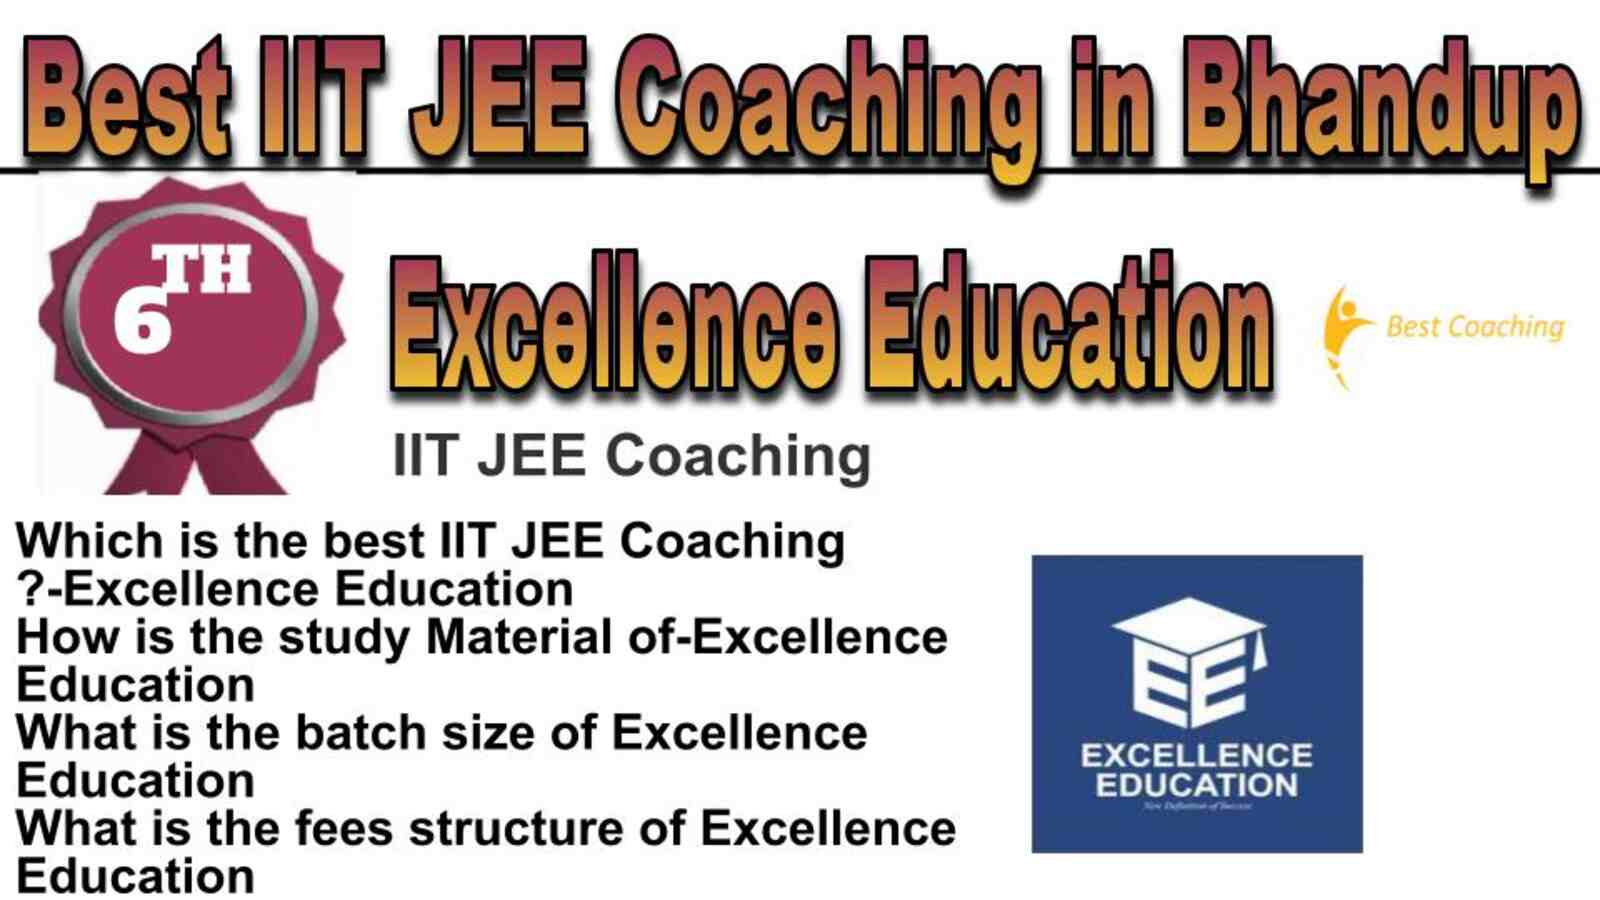 Rank 6 best IIT JEE coaching in Bhandup